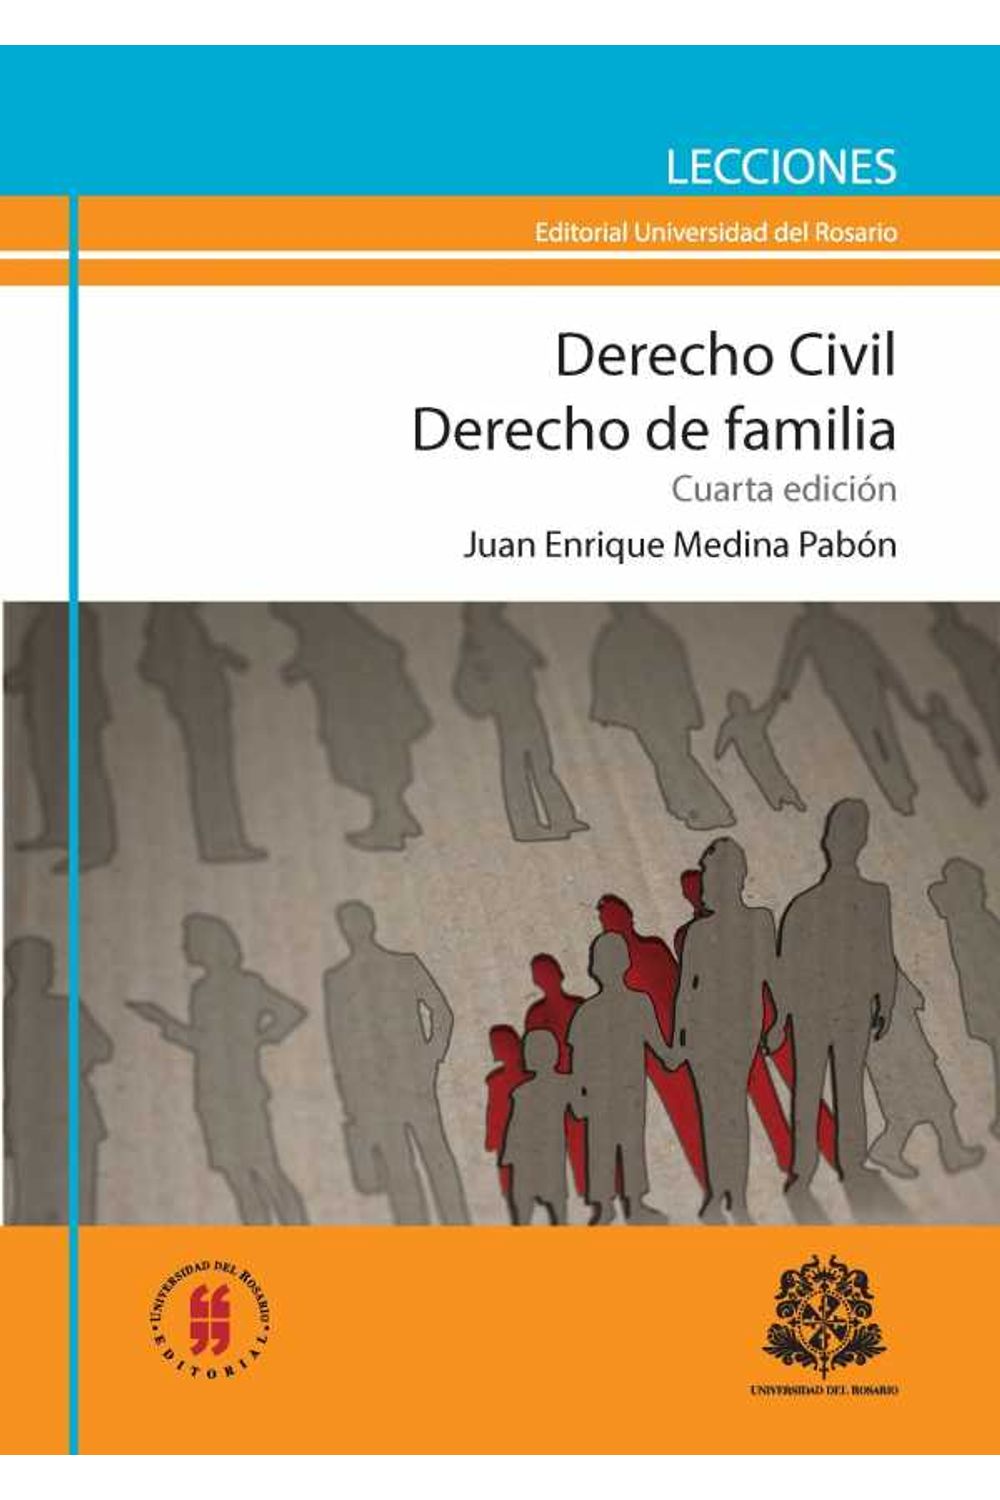 bw-derecho-civil-derecho-de-familia-editorial-universidad-del-rosario-9789587384574